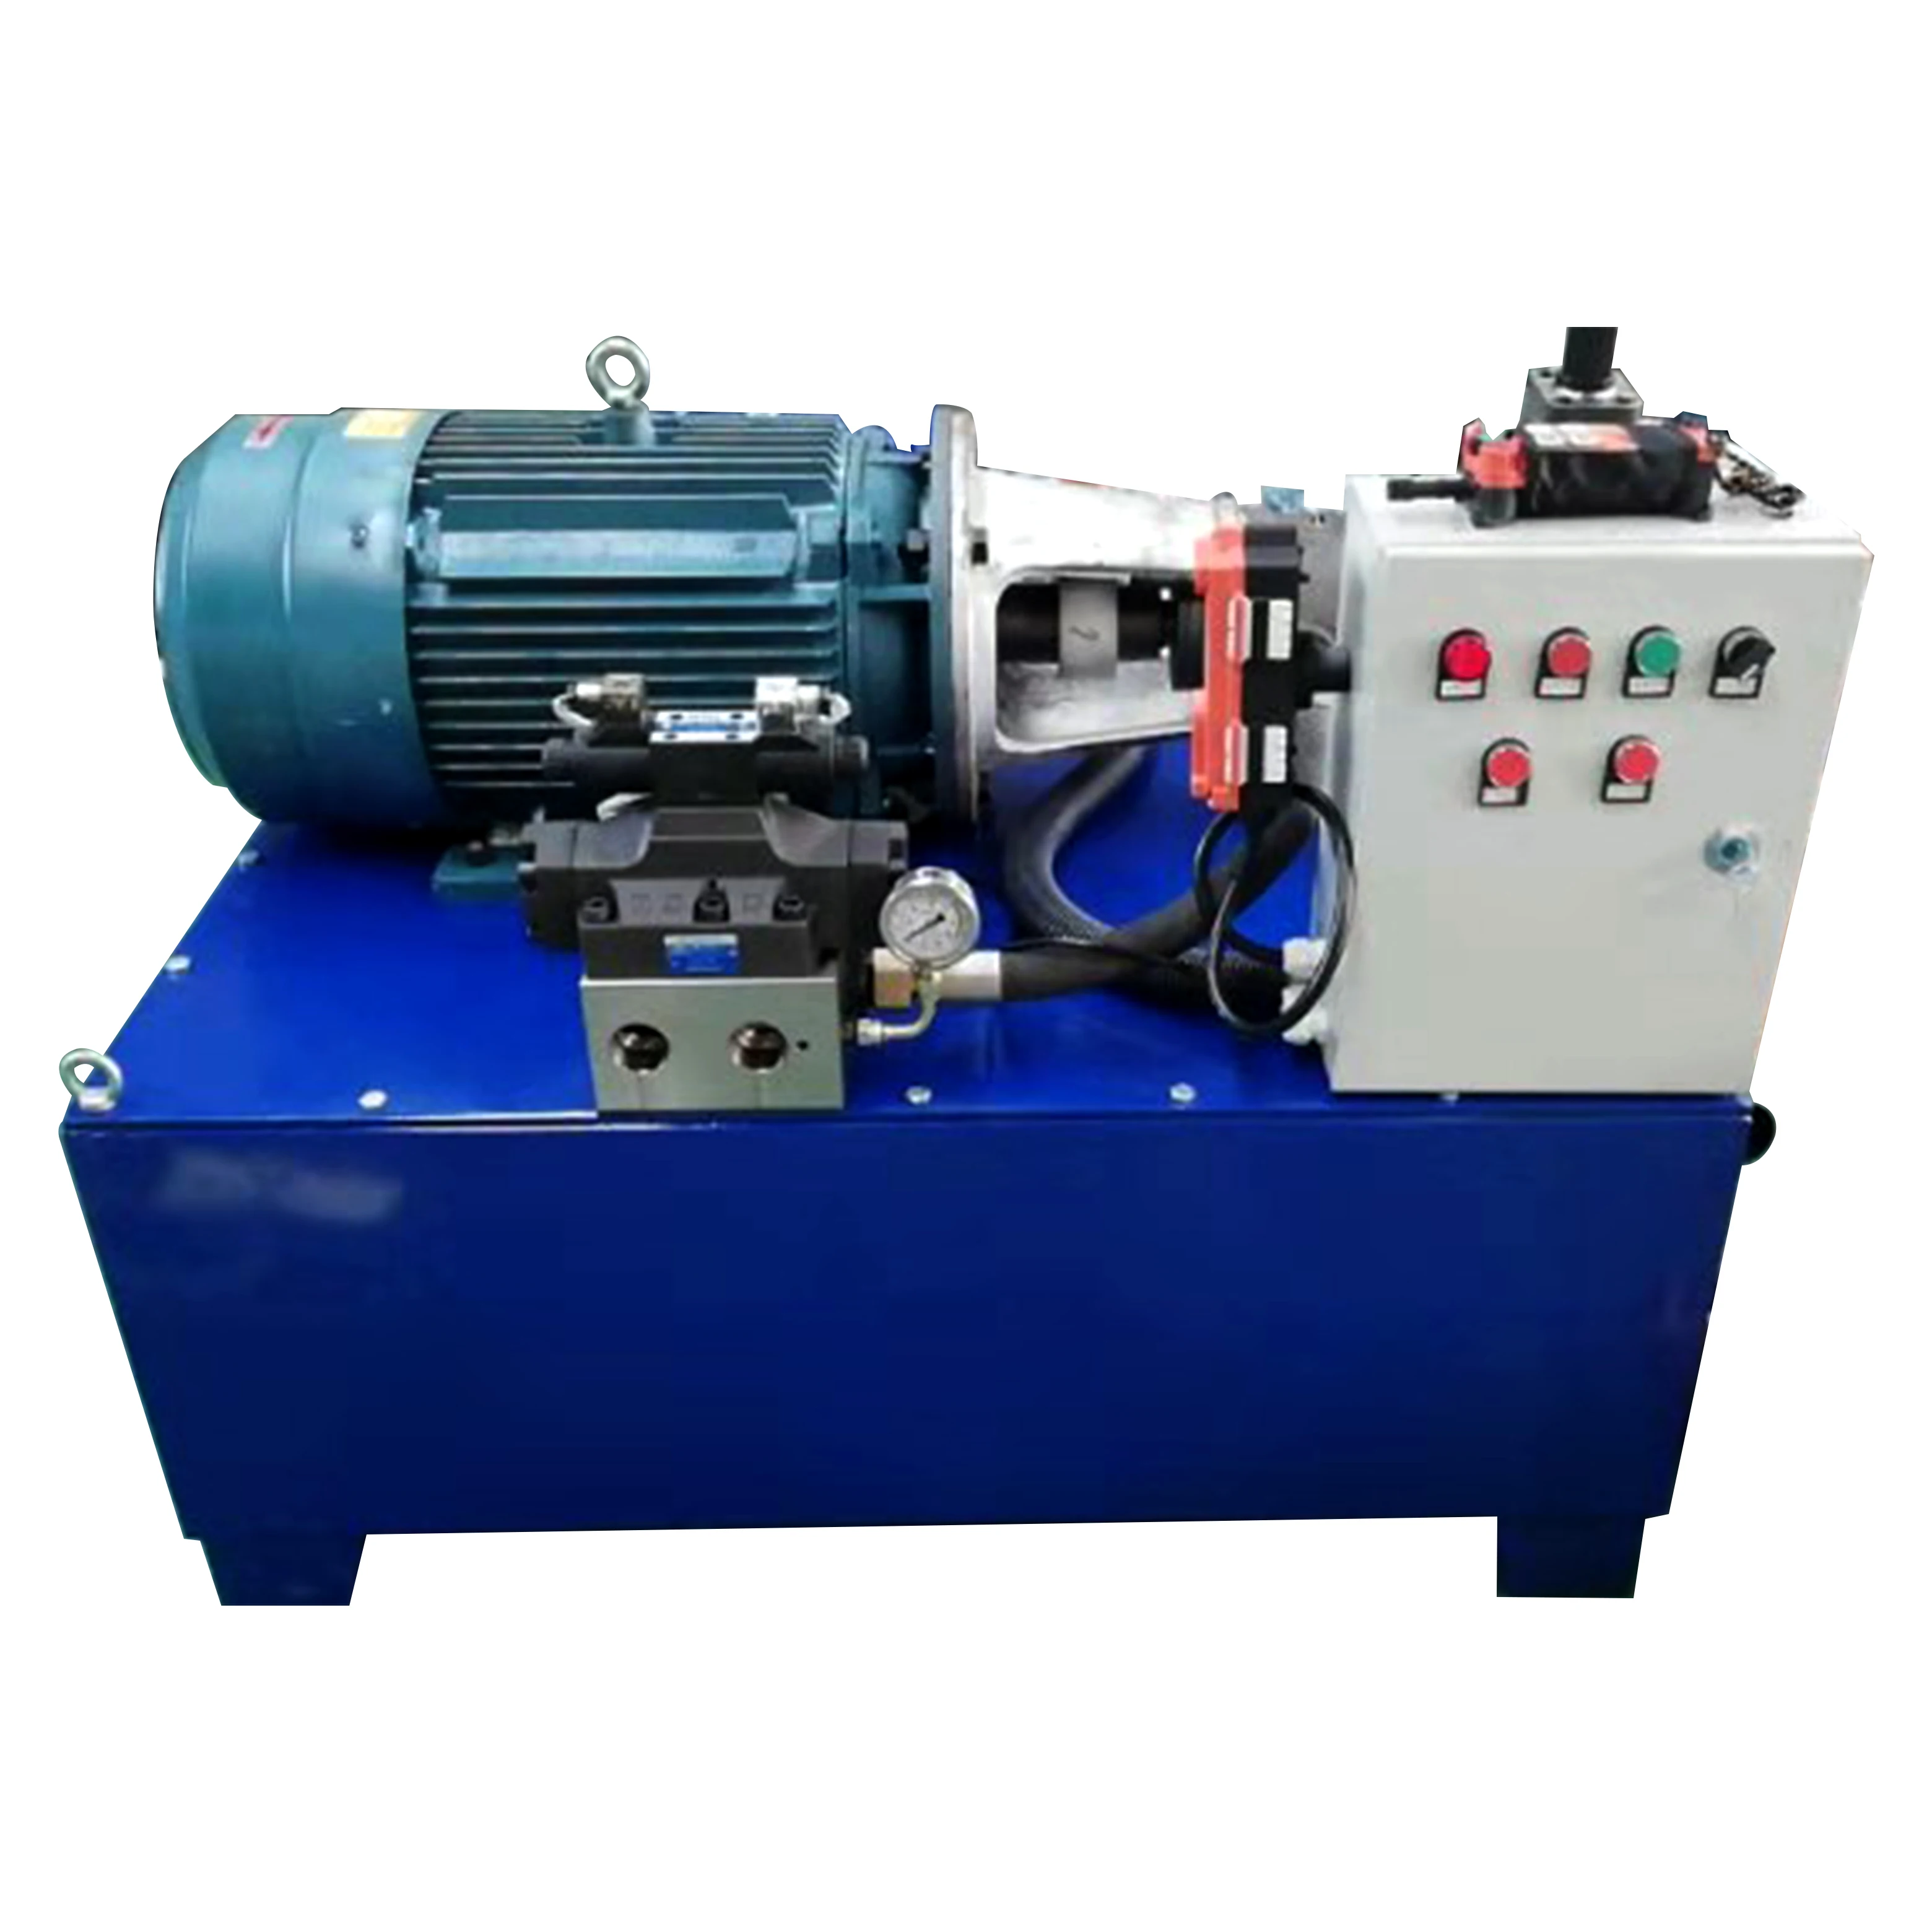 Majome 1pcs Micro générateur hydroélectrique 12V Conversion hydraulique de Puissance de Stabilivolt 10W 